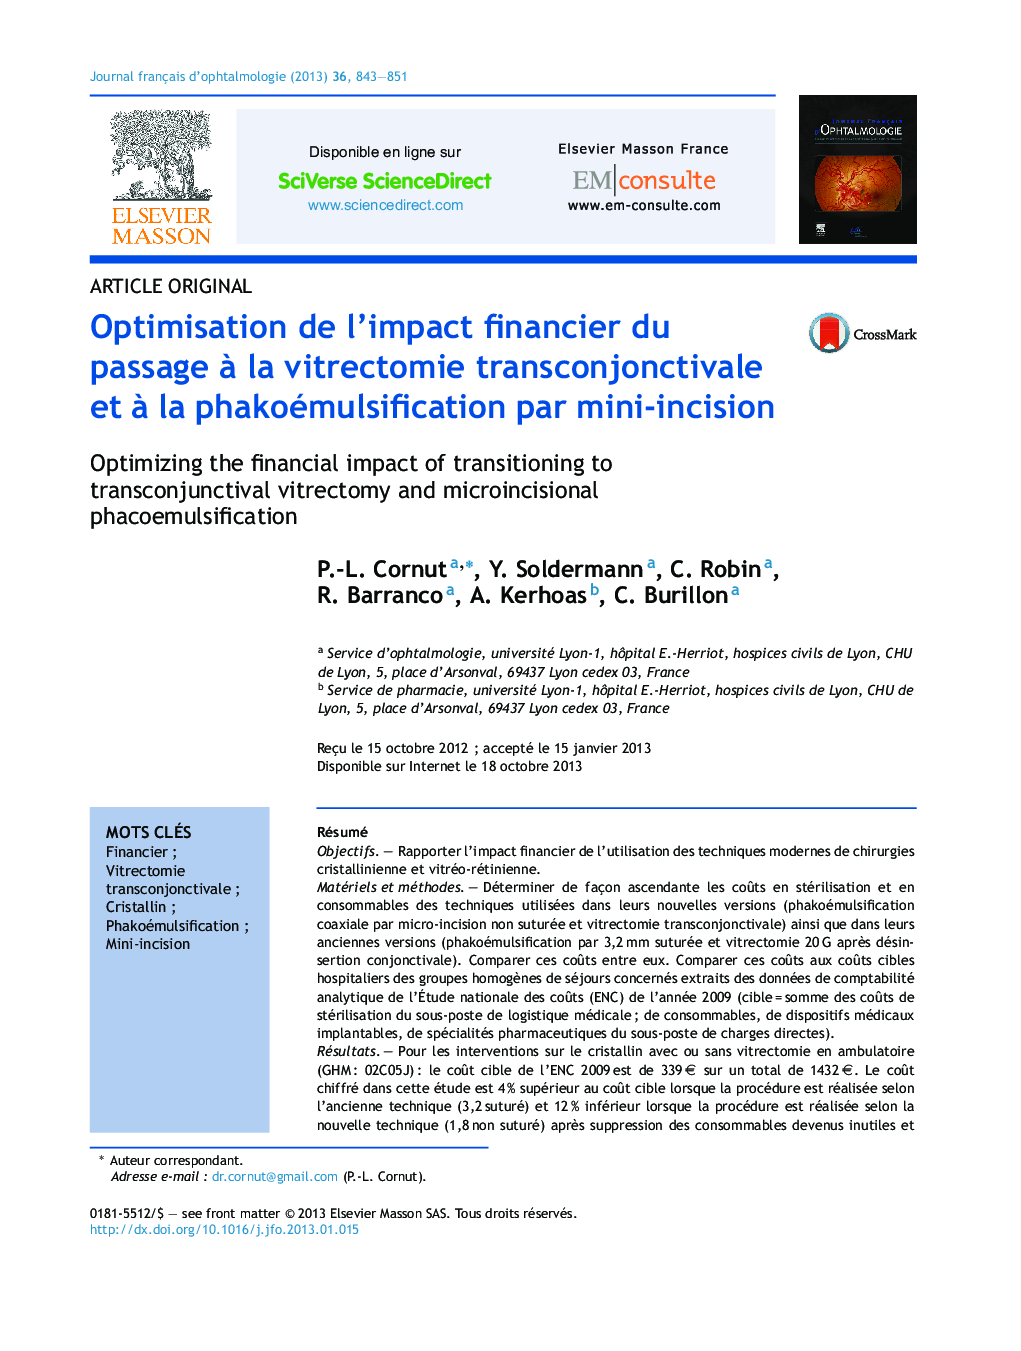 Optimisation de l'impact financier du passage Ã  la vitrectomie transconjonctivale et Ã  la phakoémulsification par mini-incision